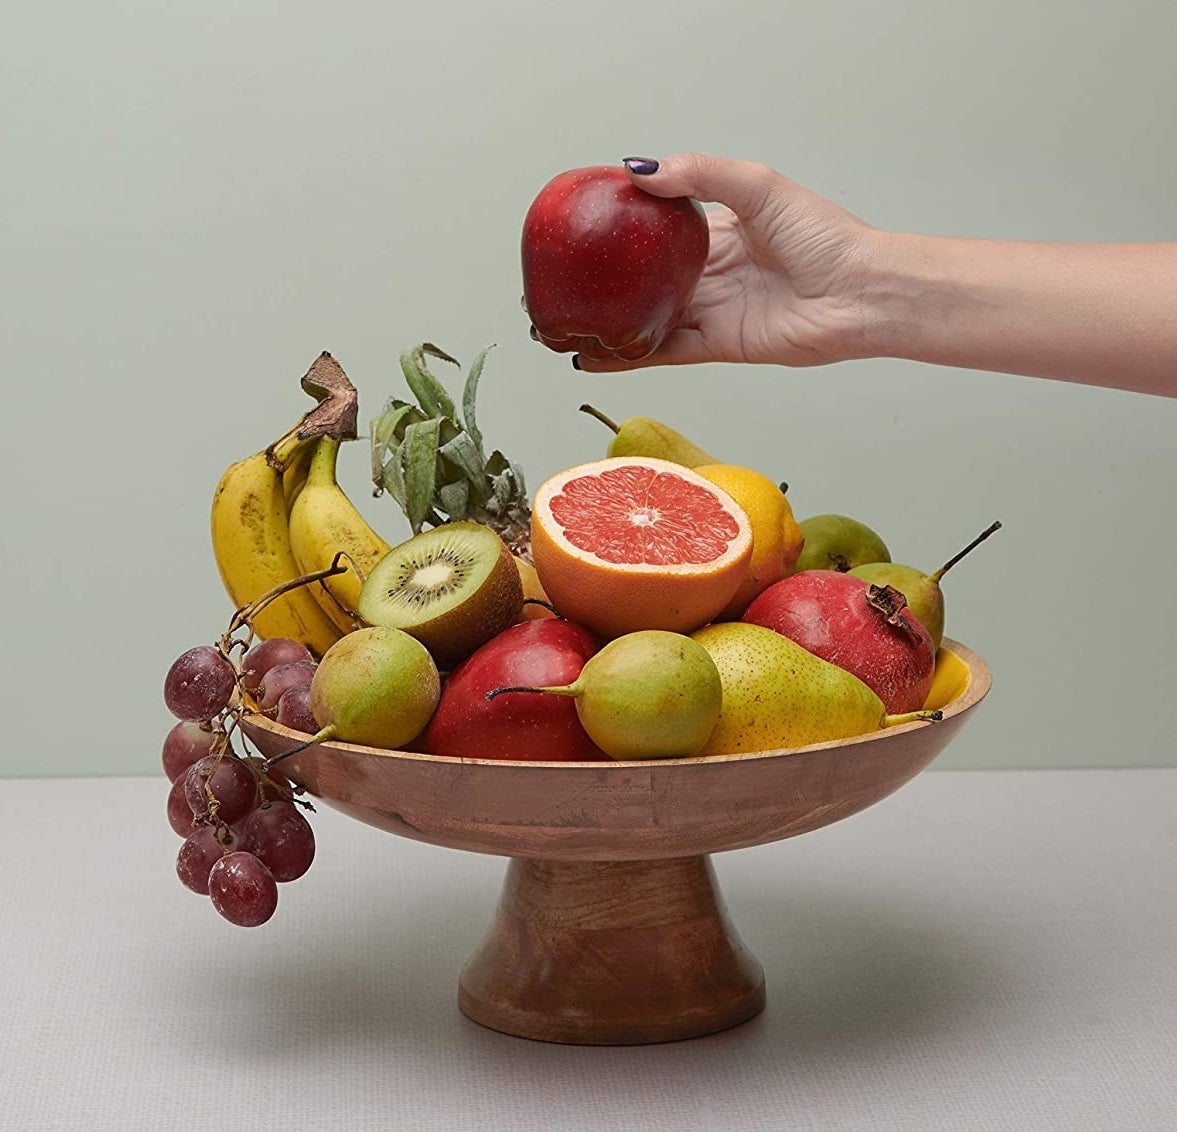 Fruit inside the bowl